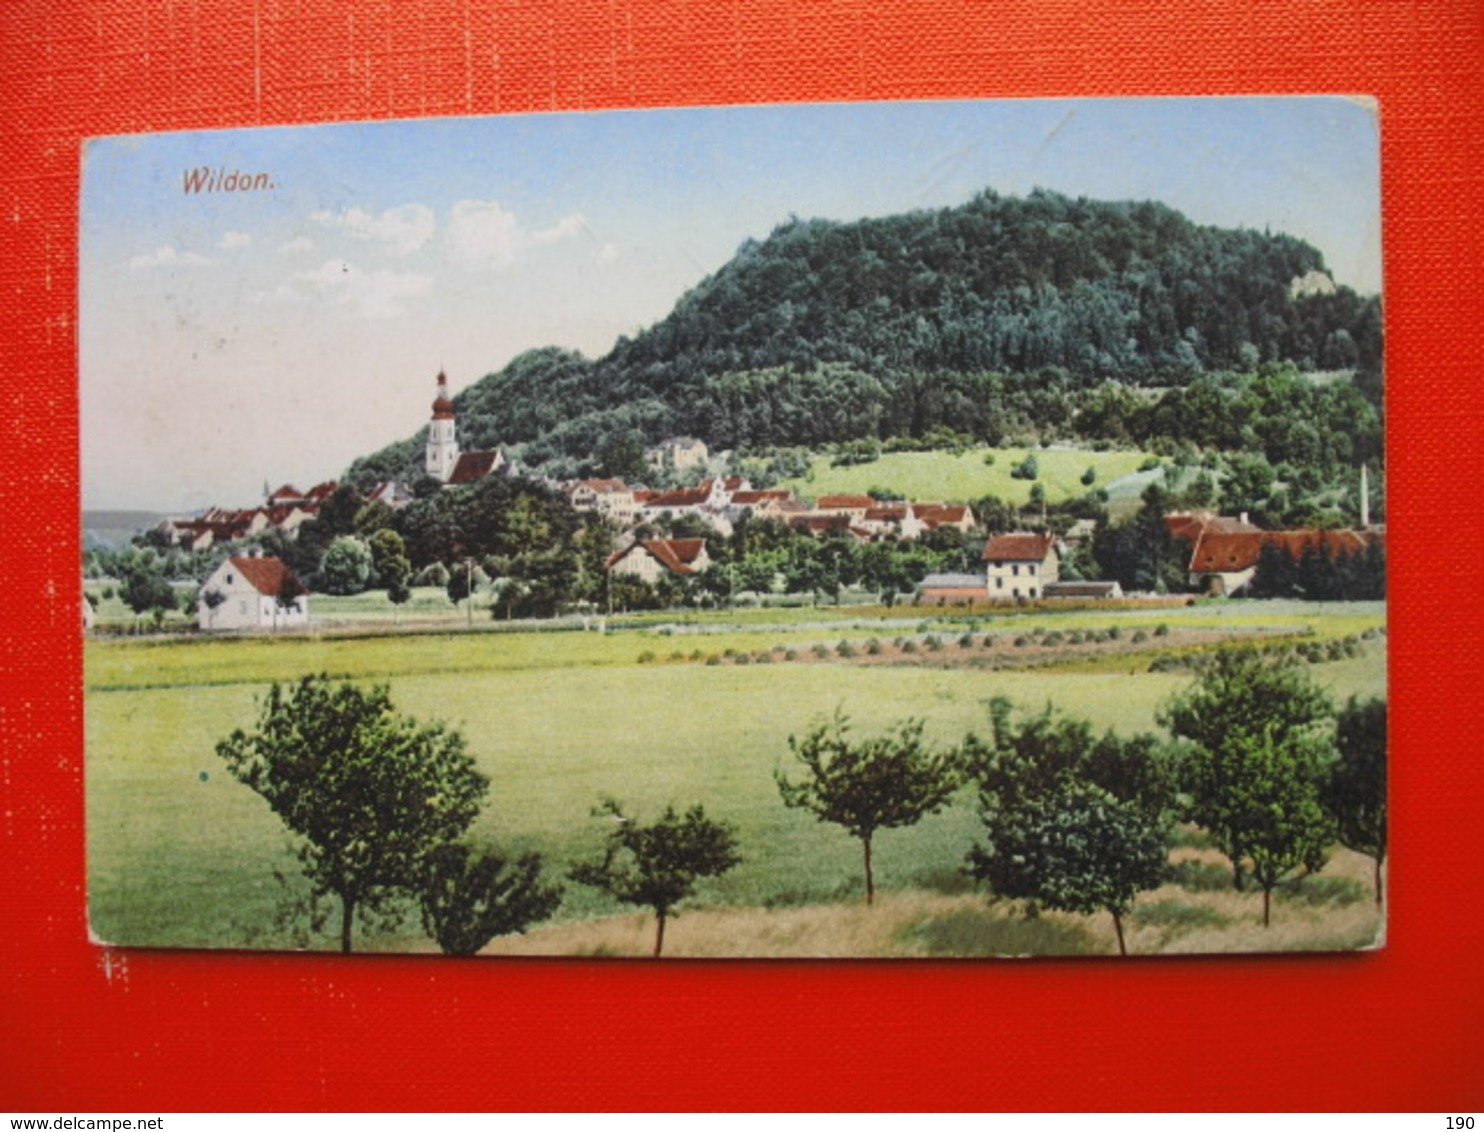 Wildon - Leibnitz